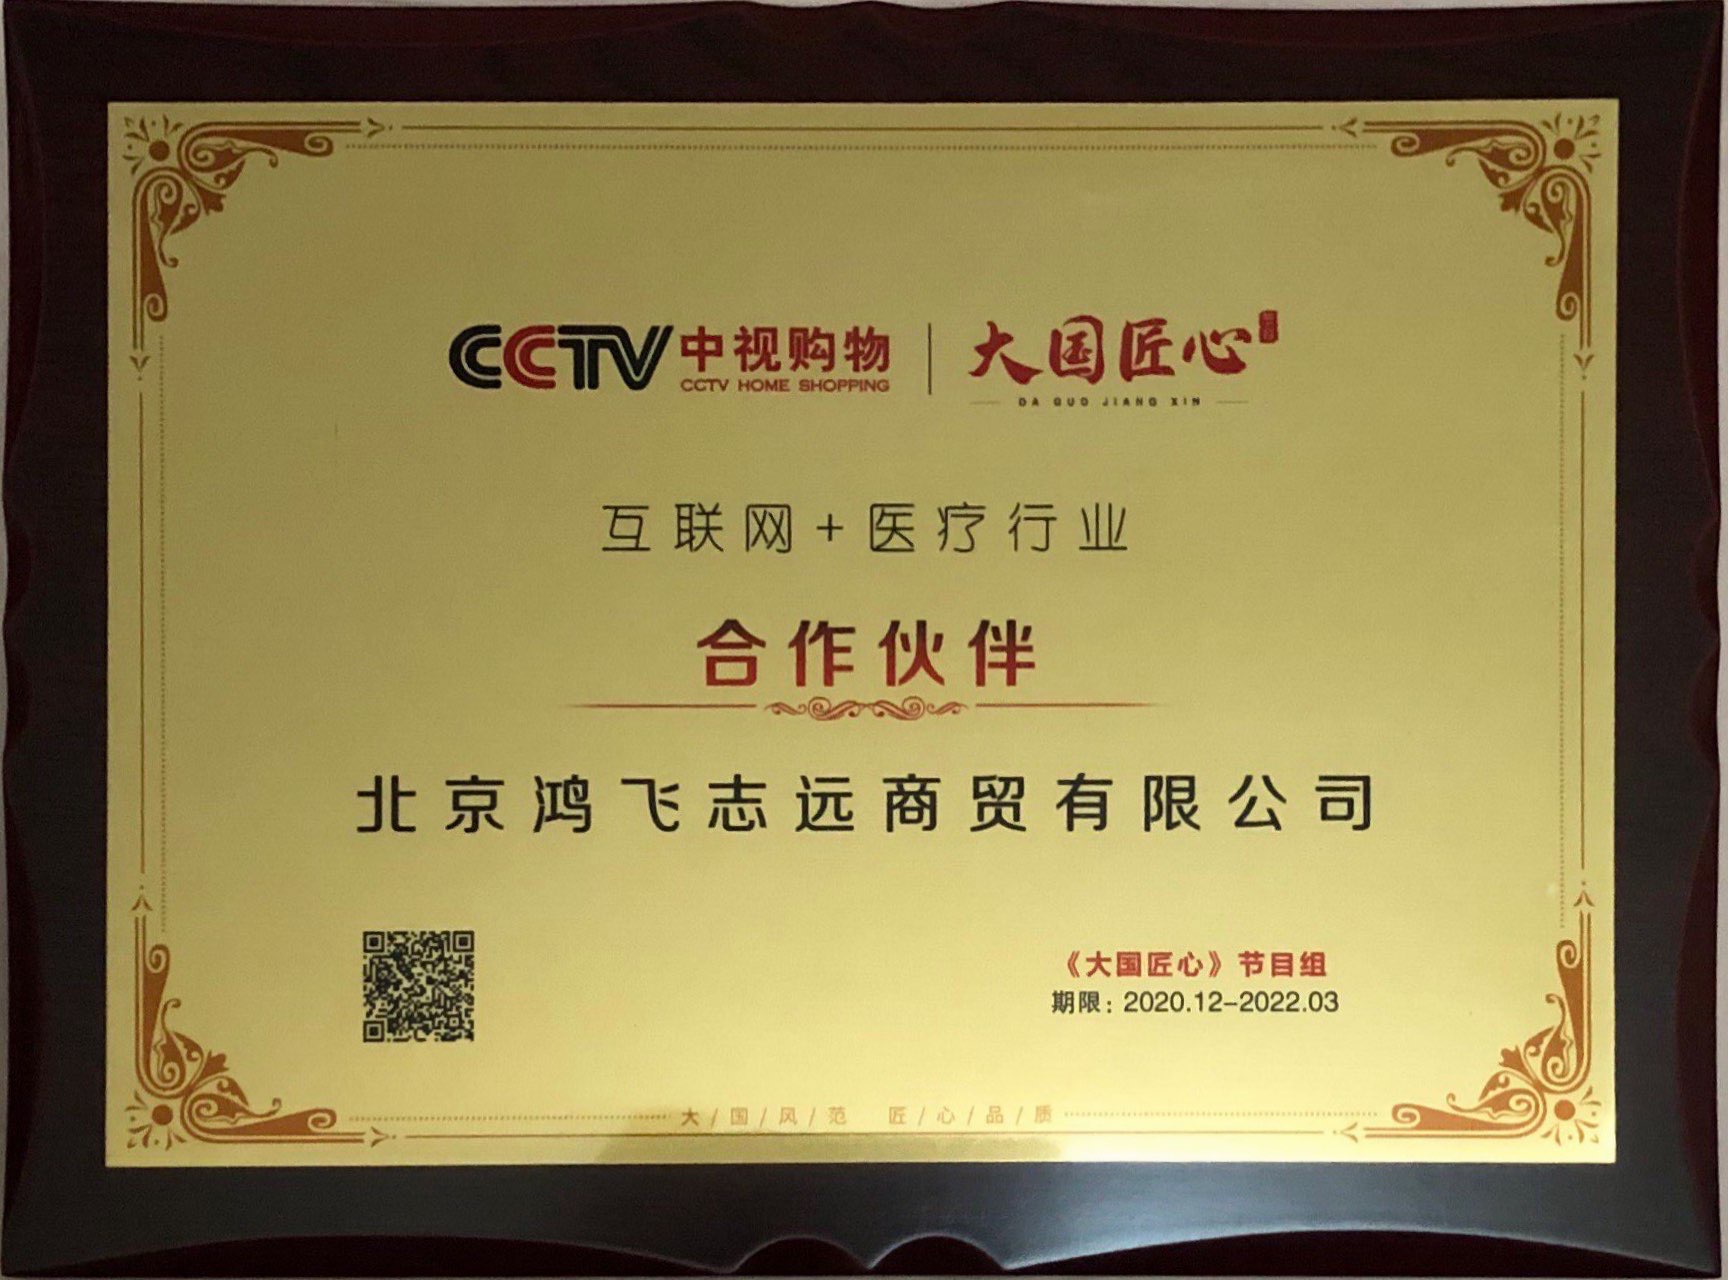 CCTV【百年巨变 品牌强国】第七届中国品牌创新发展论坛扬帆医疗受邀出席